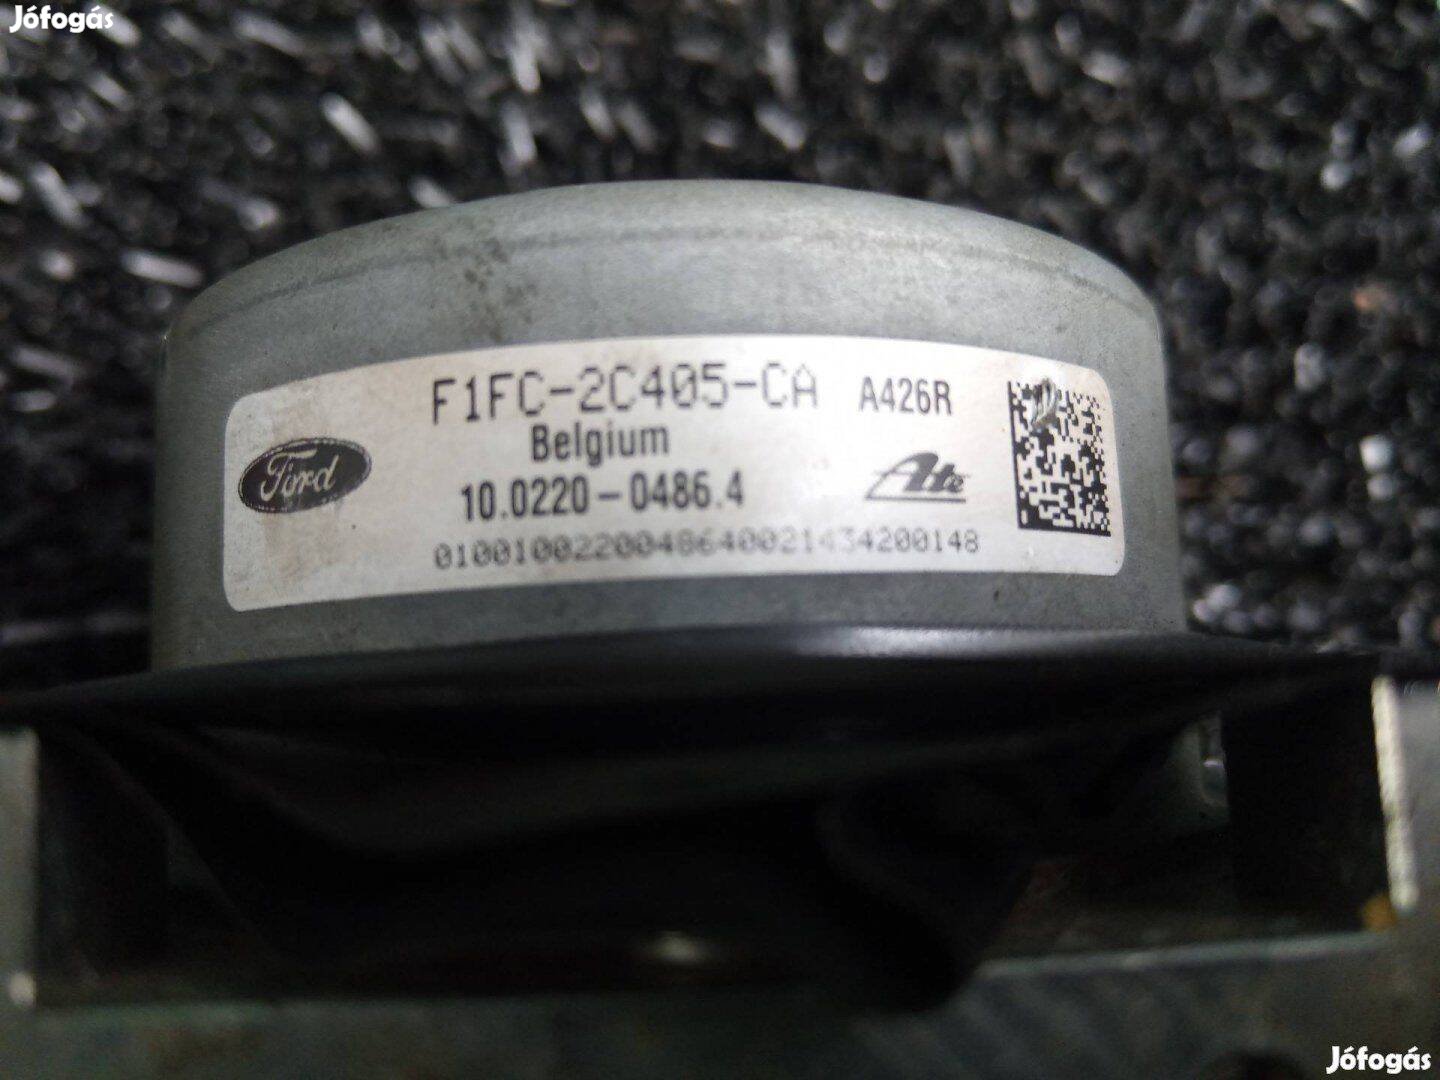 Eladó Ford focus MK3 ABS egység kocka f1fc-2c405-ca